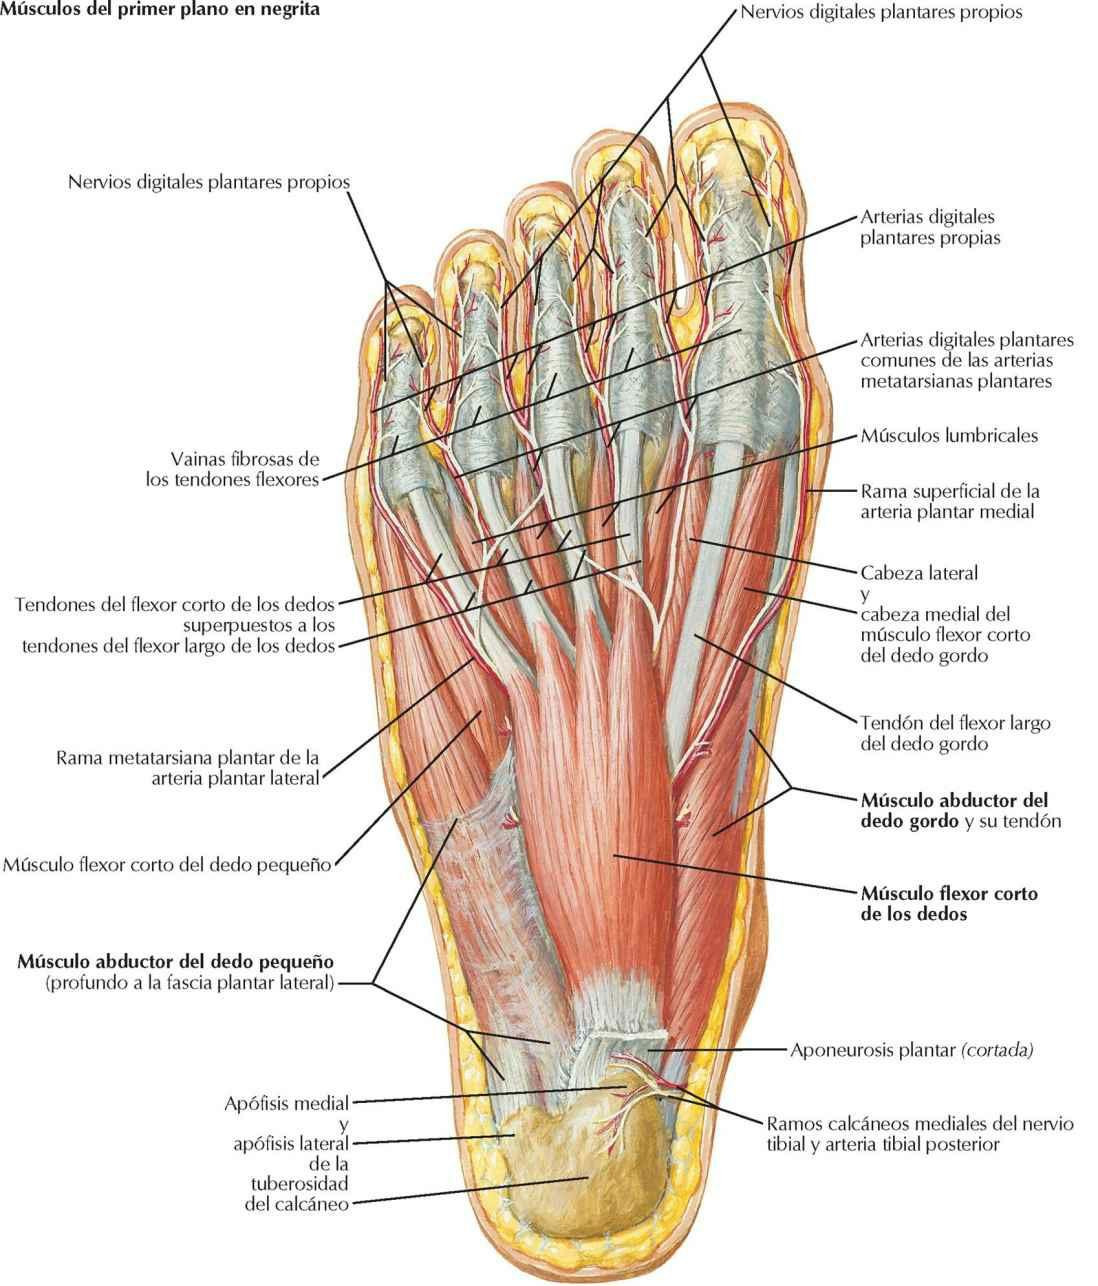 Músculos de la región plantar del pie: primer plano